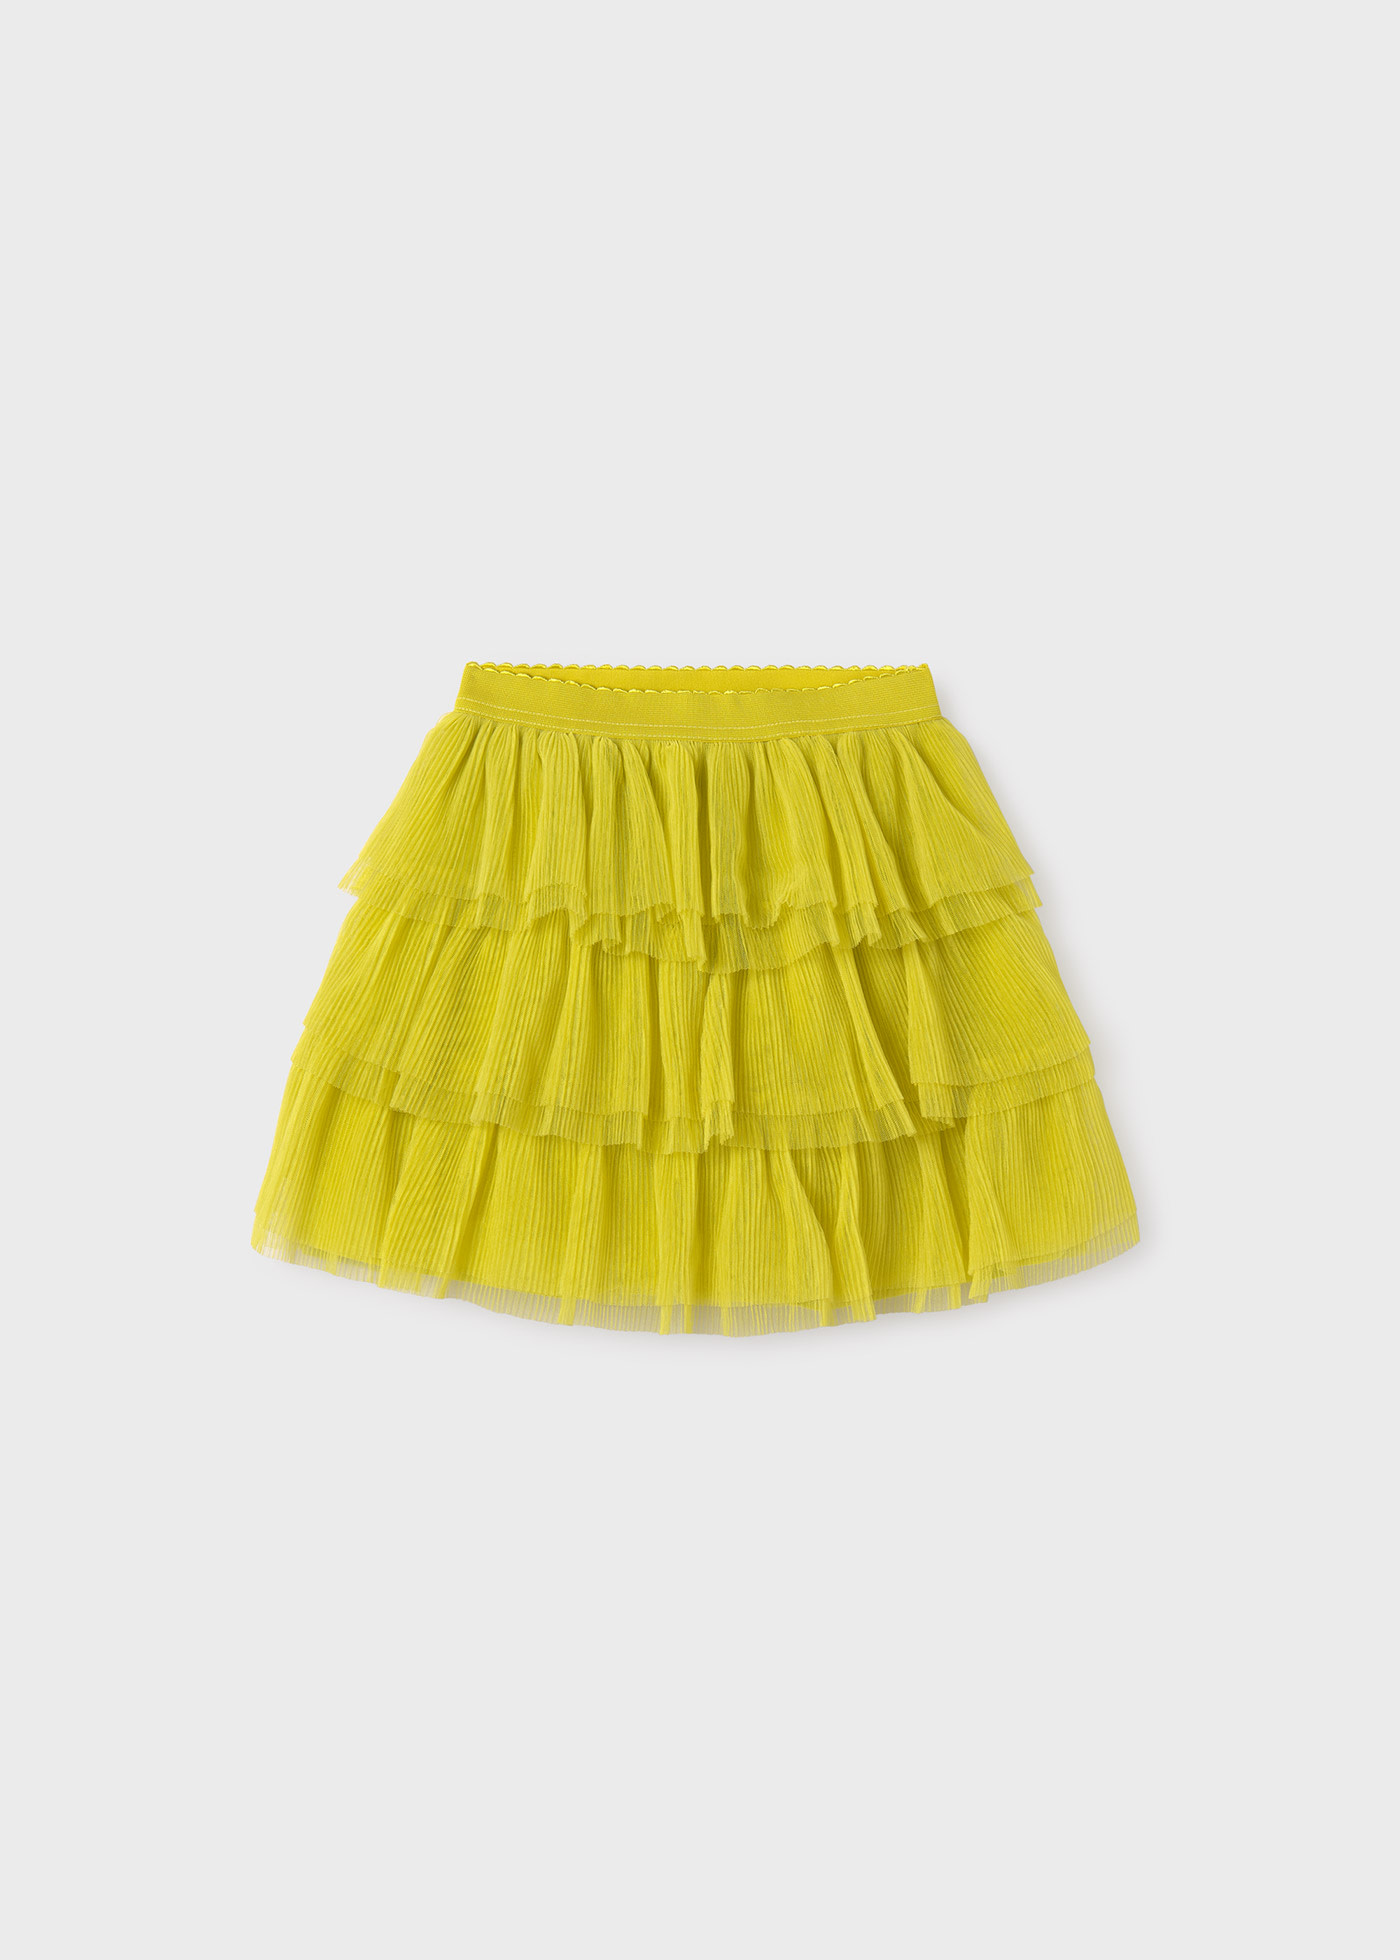 Girls tulle skirt